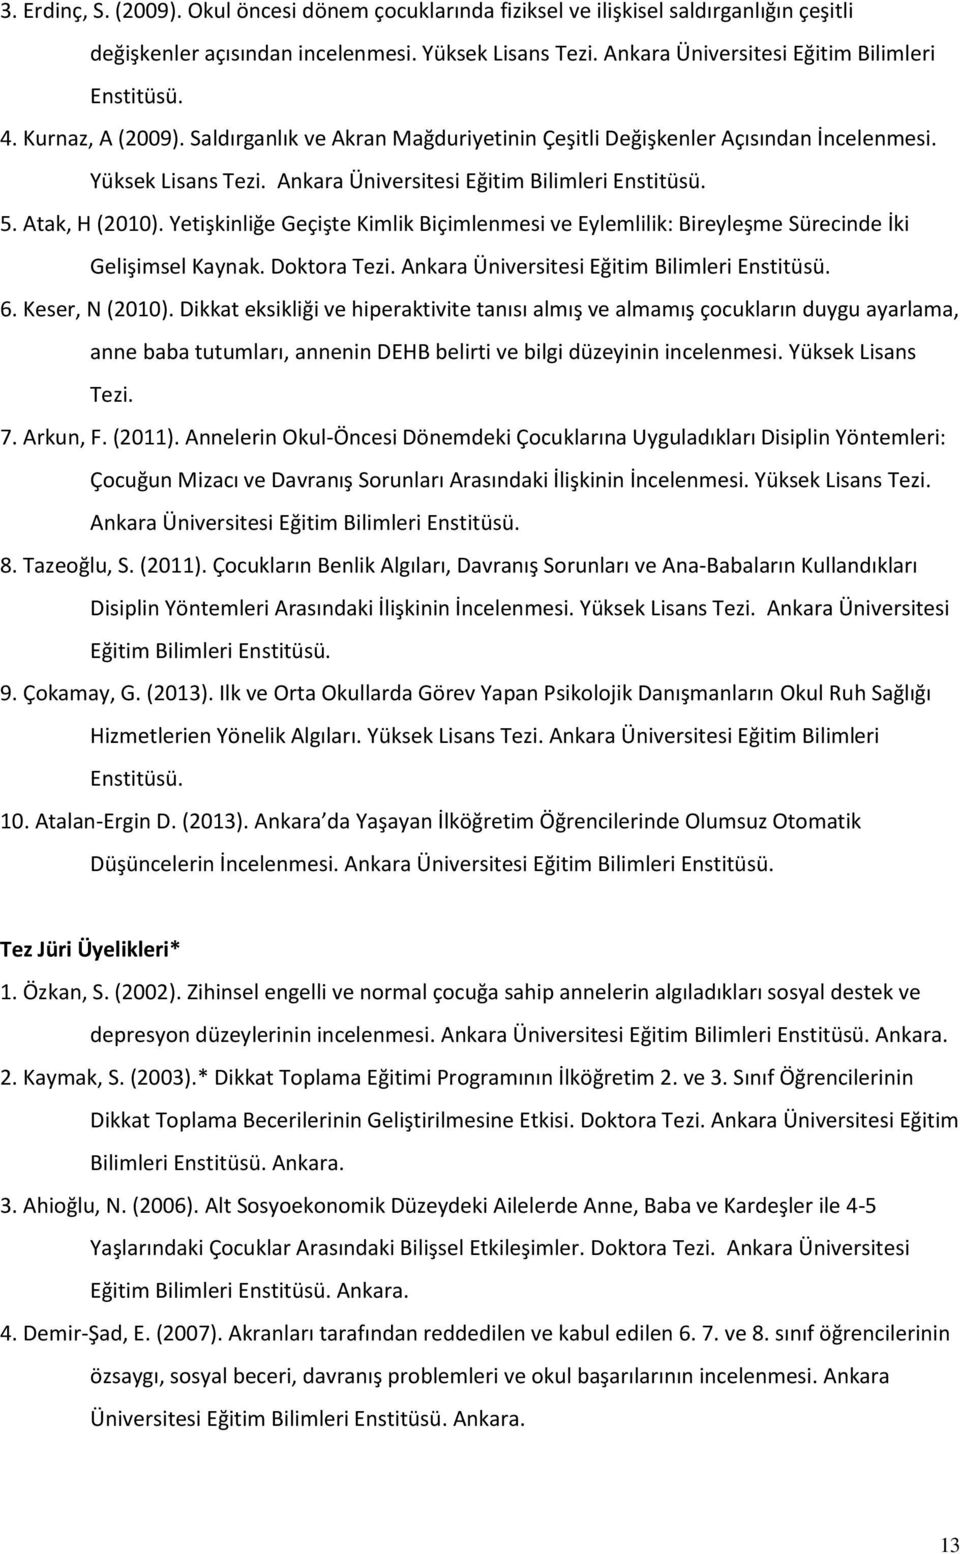 Yetişkinliğe Geçişte Kimlik Biçimlenmesi ve Eylemlilik: Bireyleşme Sürecinde İki Gelişimsel Kaynak. Doktora Tezi. Ankara Üniversitesi Eğitim Bilimleri Enstitüsü. 6. Keser, N (2010).